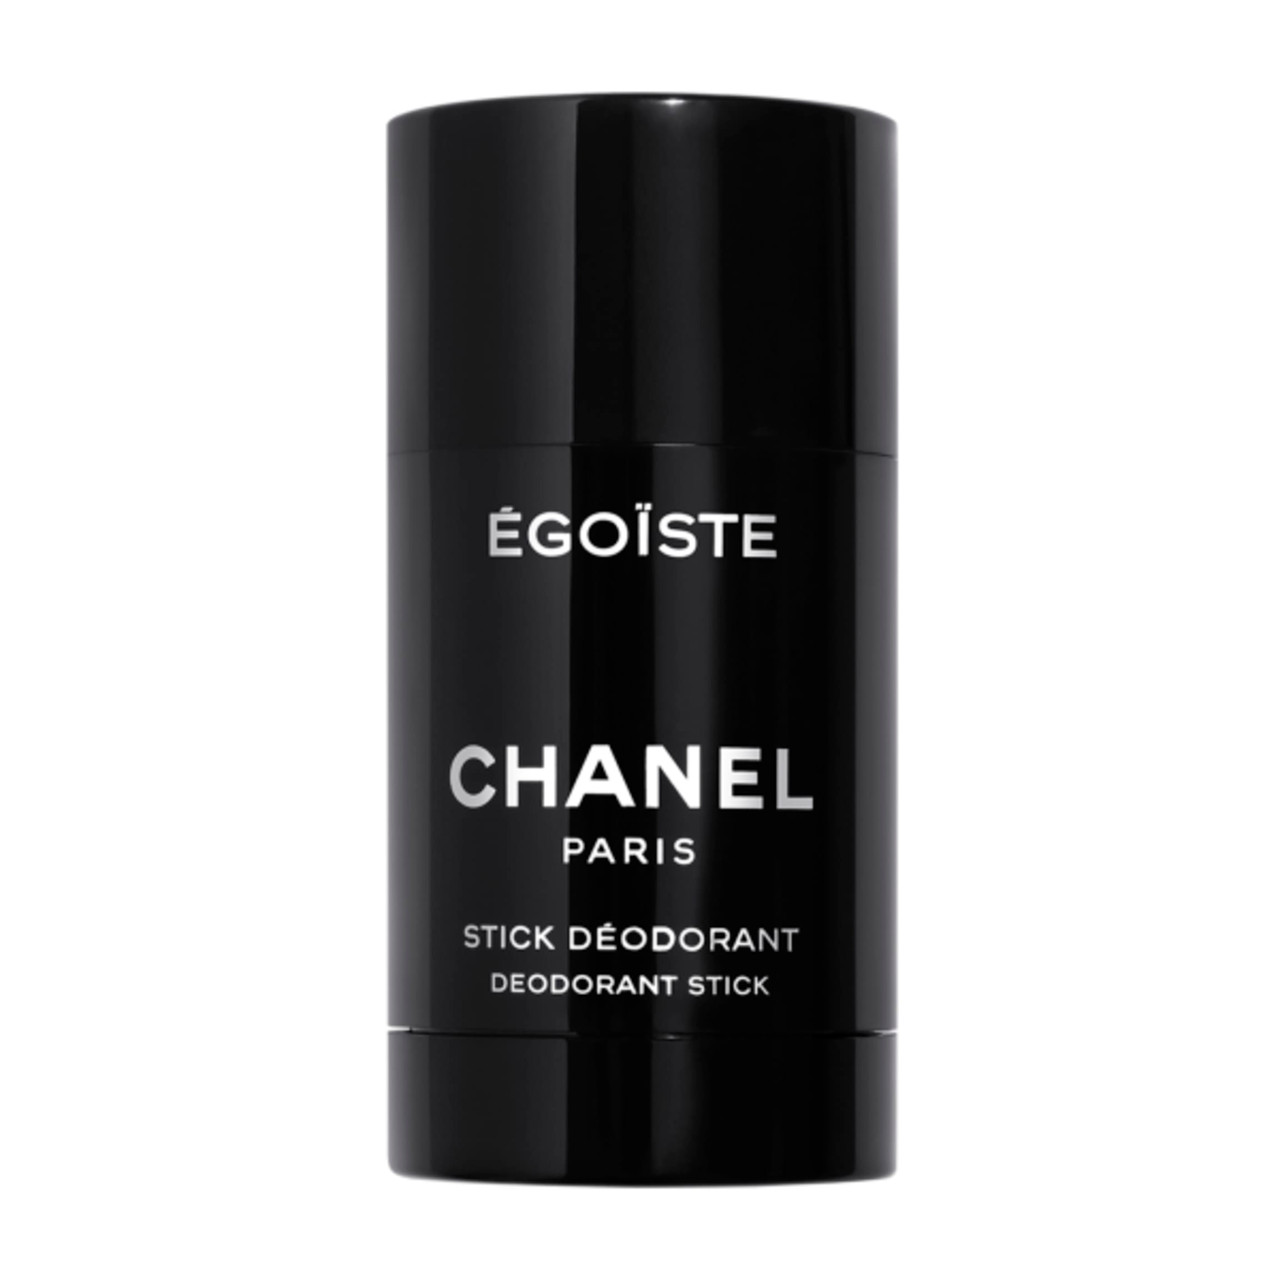 Chanel Egoiste Platinum - דאודורנט סטיק